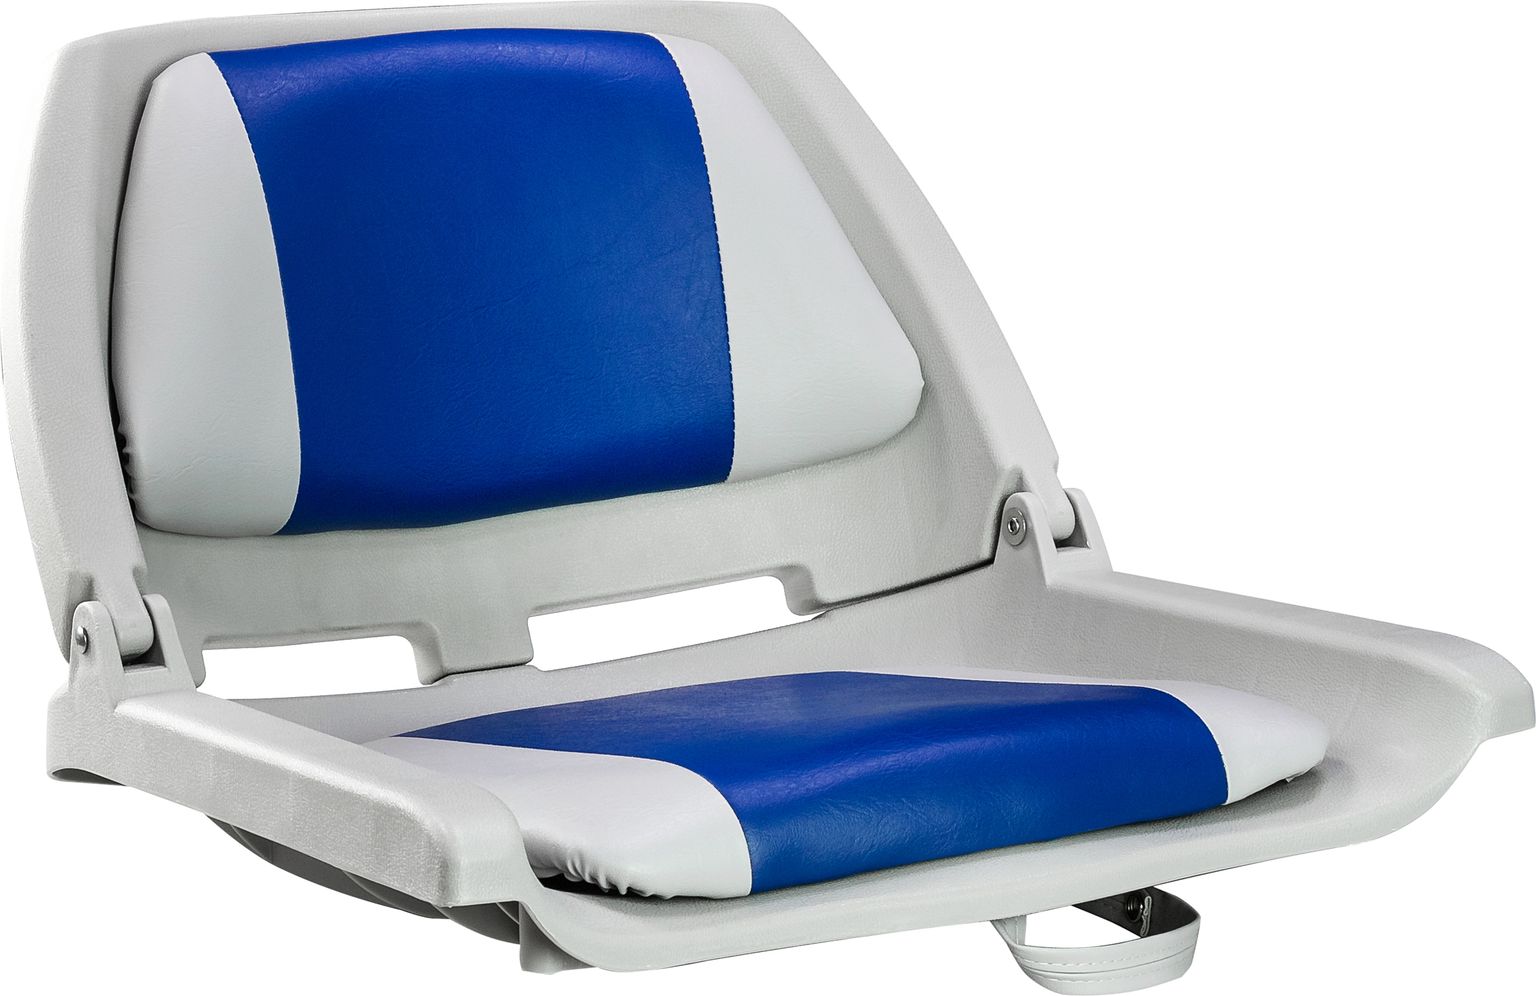 Кресло мягкое складное, обивка винил, цвет серый/синий, Marine Rocket 75109GB-MR кресло мягкое складное classic обивка винил серый синий marine rocket 75102gb mr